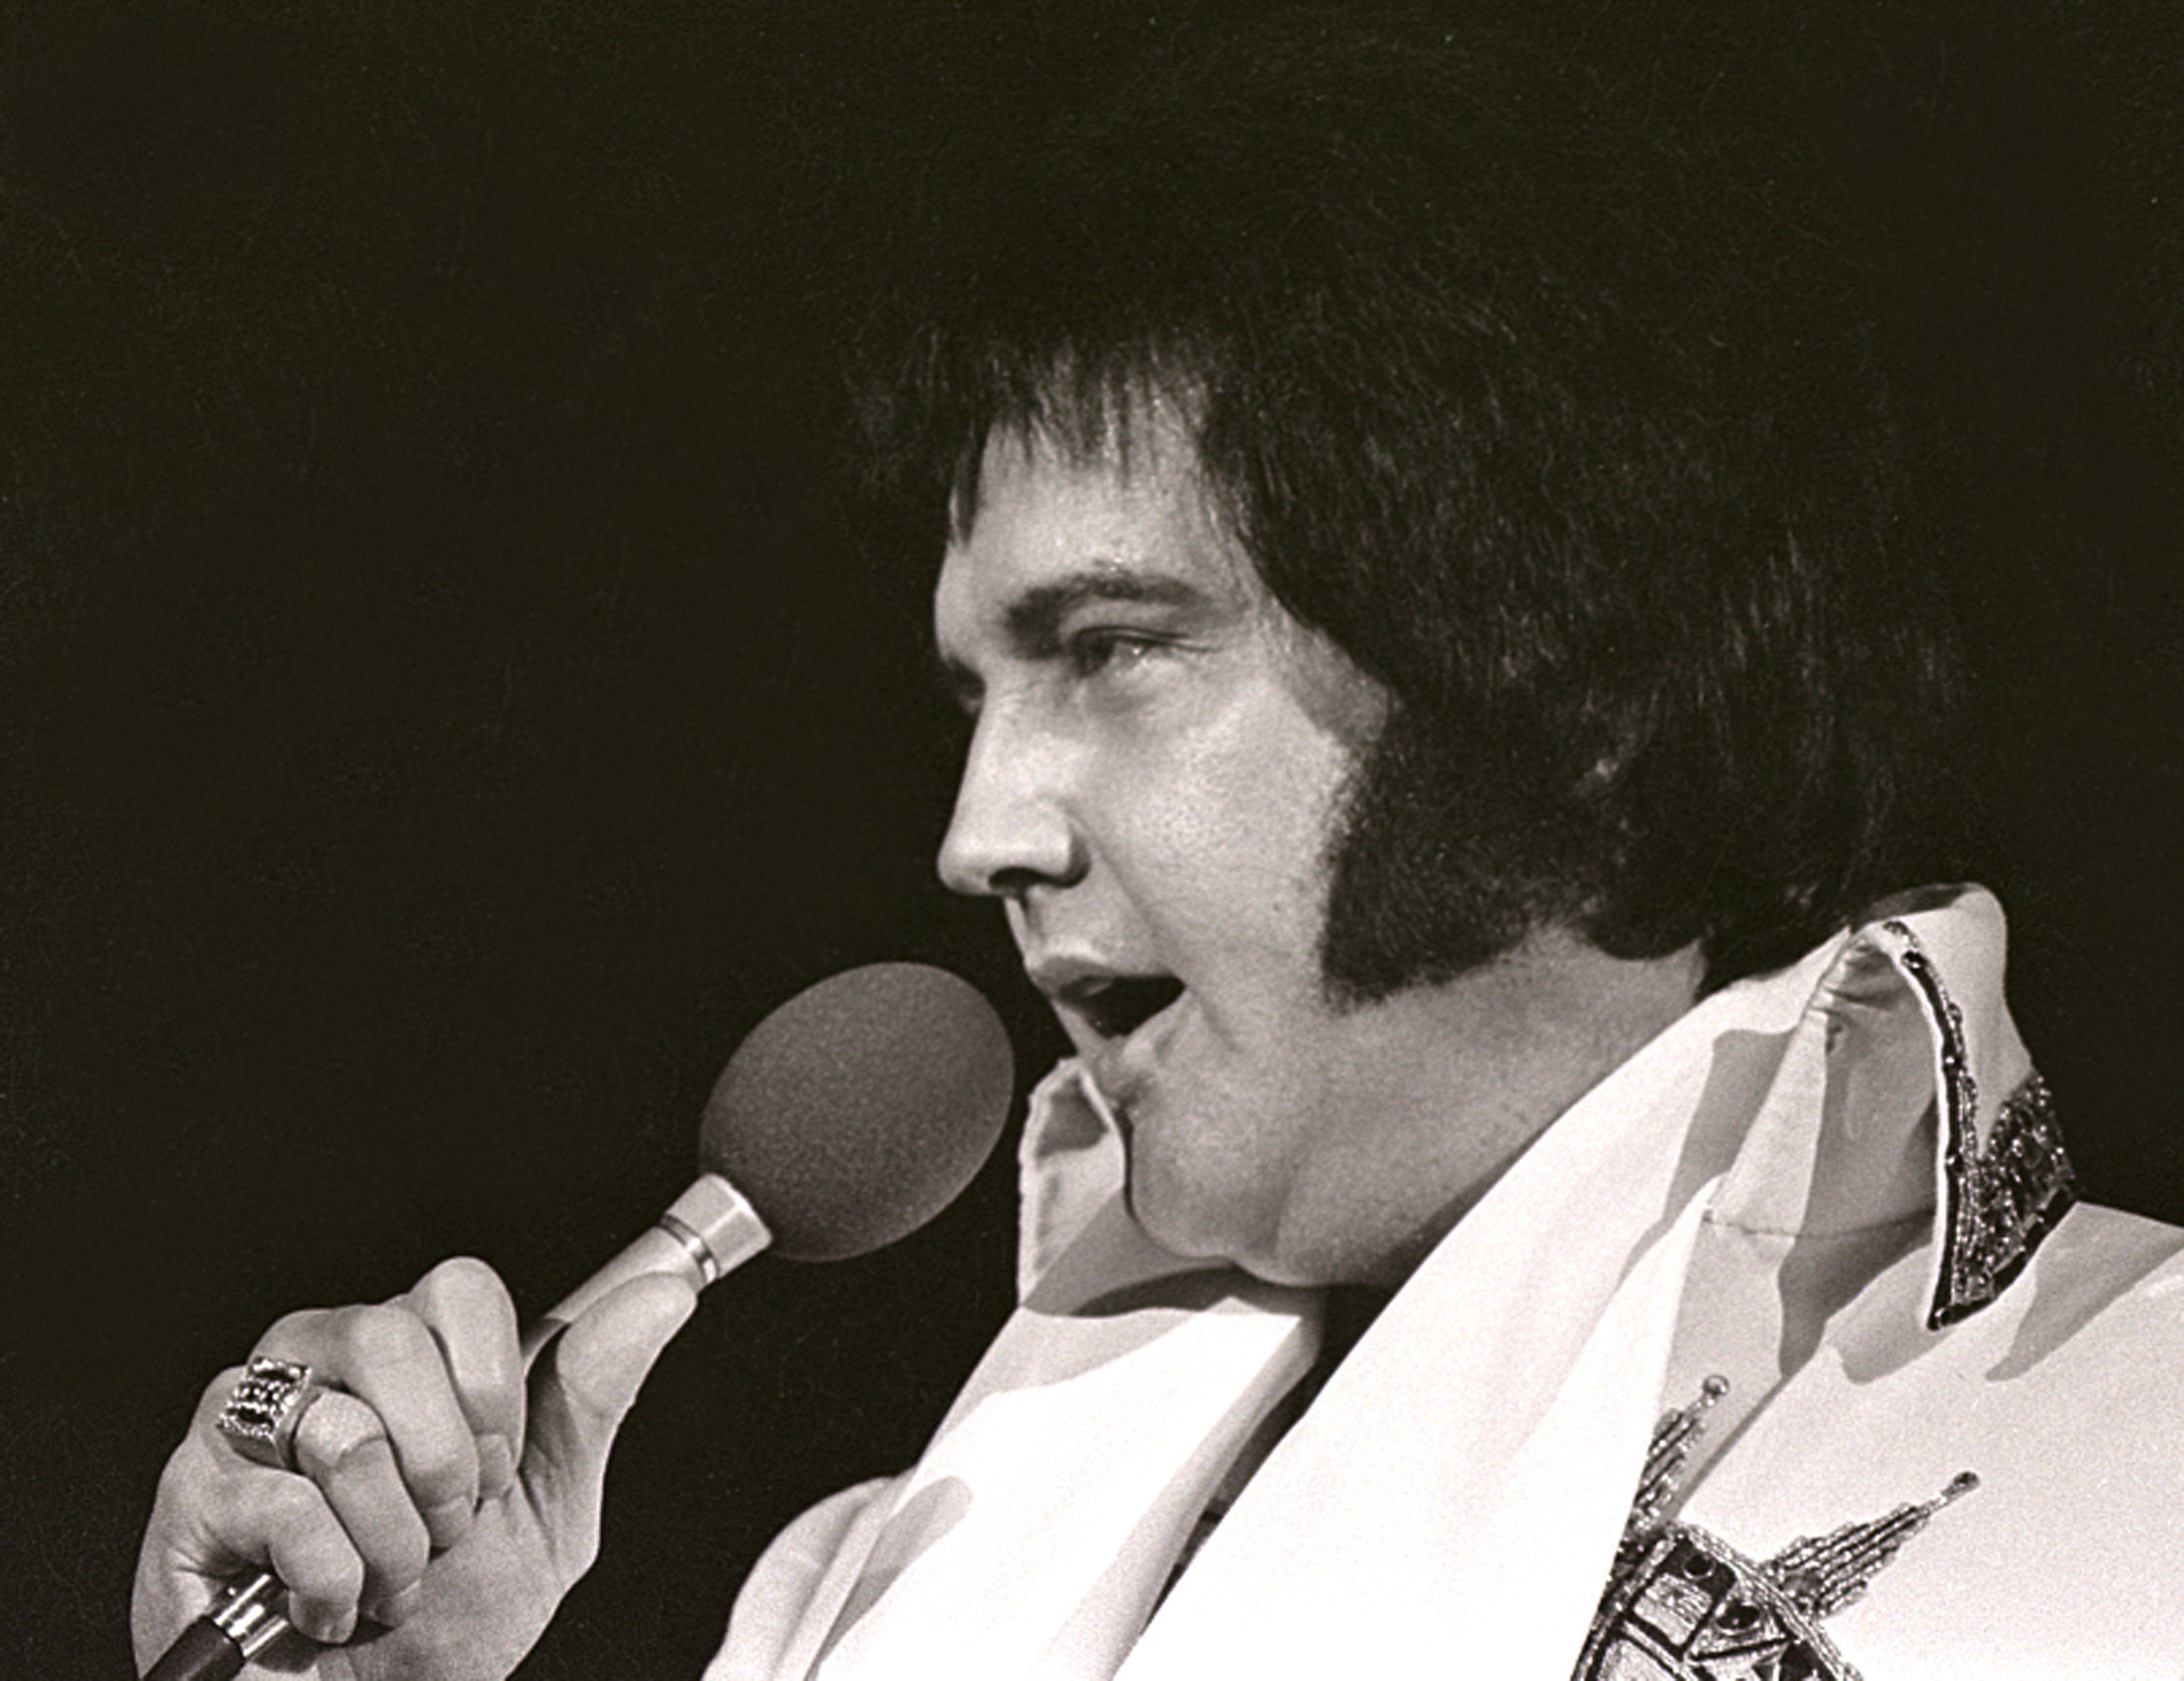 Elvis während eines Auftritts im Jahr 1977. | Quelle: Getty Images